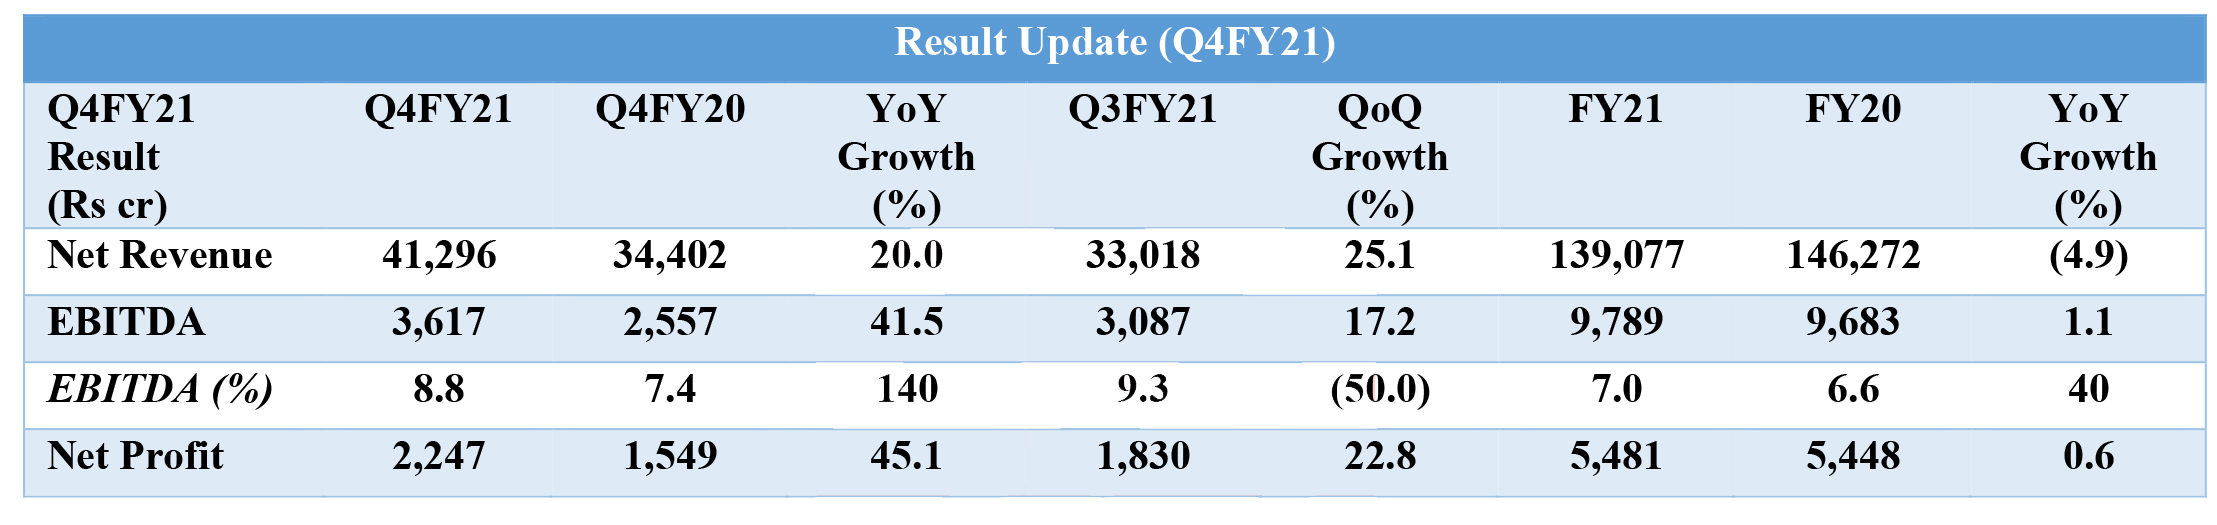 Q4FY21 Result Update-Reliance Retail-1